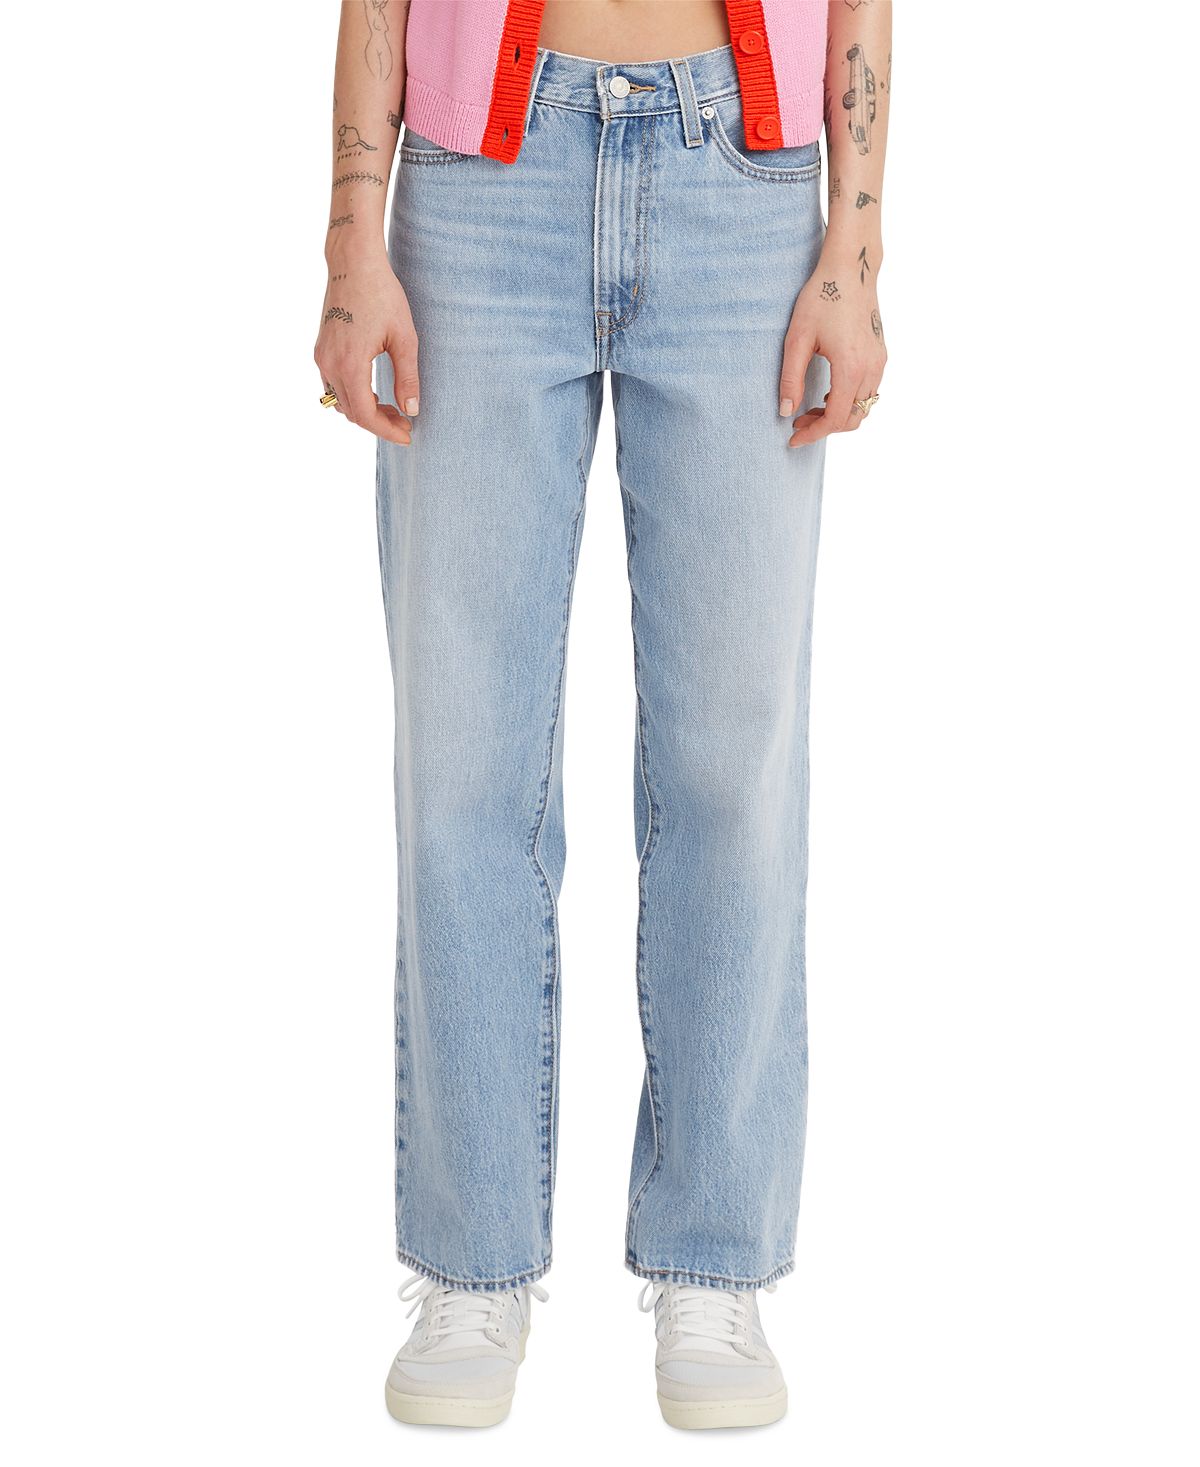 Женские мешковатые джинсы со средней посадкой 94 из хлопка Levi's цена и фото